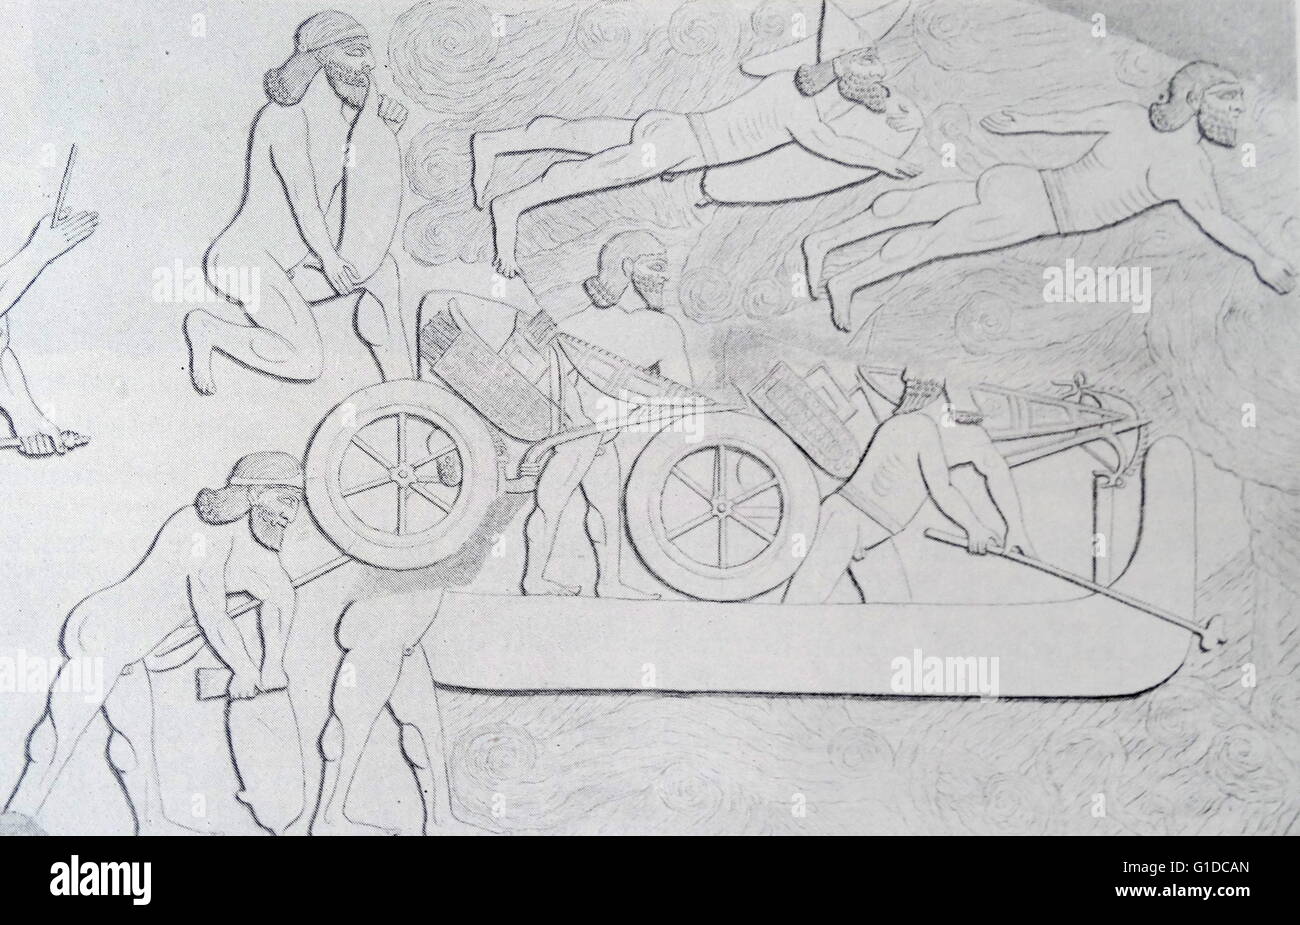 Impression d'une sculpture de secours de Ninive, représentant des soldats natation à travers une rivière sans le sida. Banque D'Images